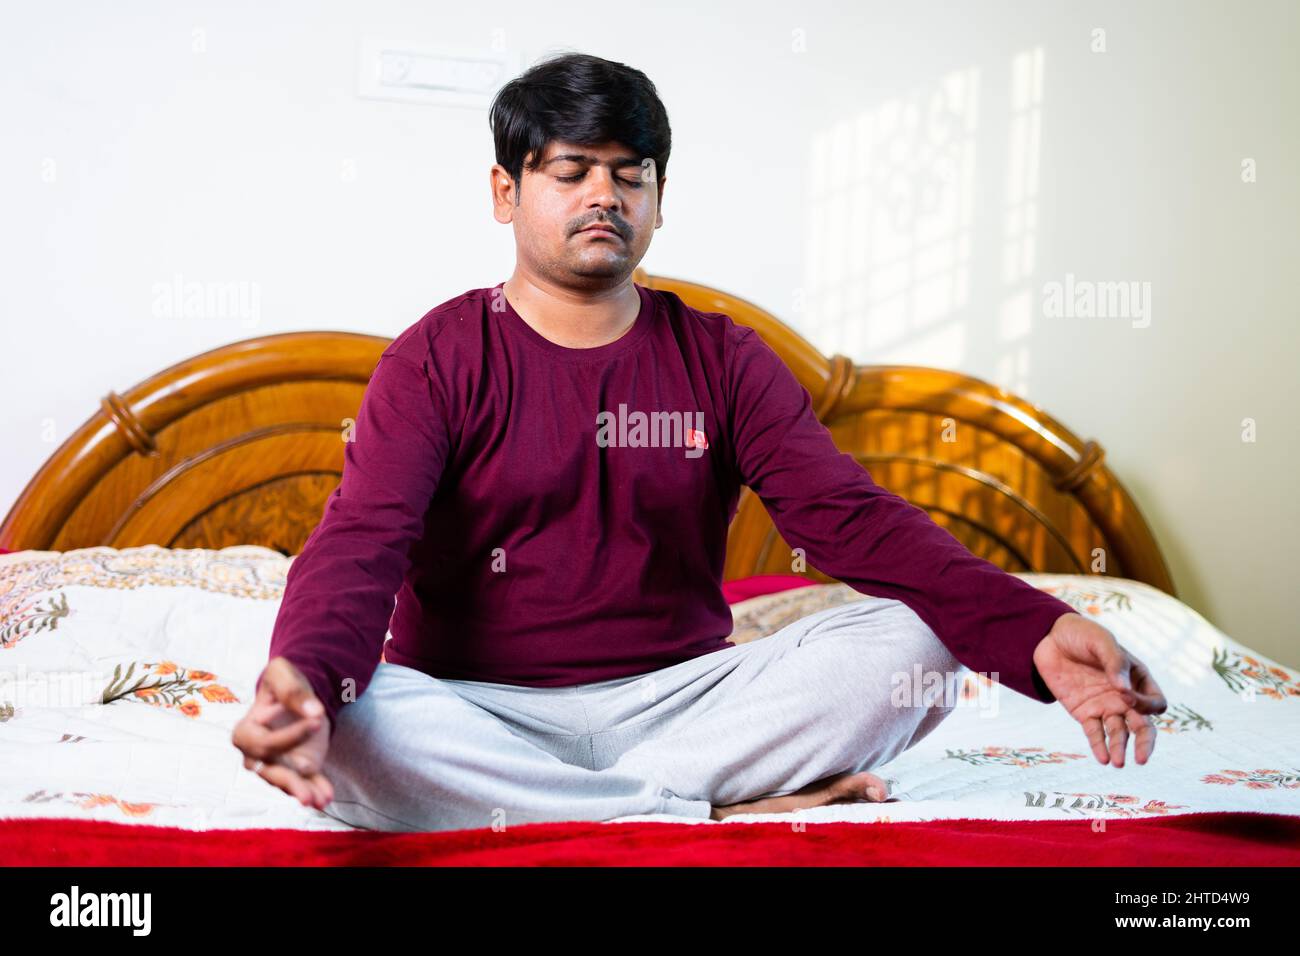 Junger indischer Mann, der Meditation mit geschlossenen Augen auf dem Bett macht – Konzept gesunder Lebensstile, Achtsamkeit und Strees Erleichterung Stockfoto